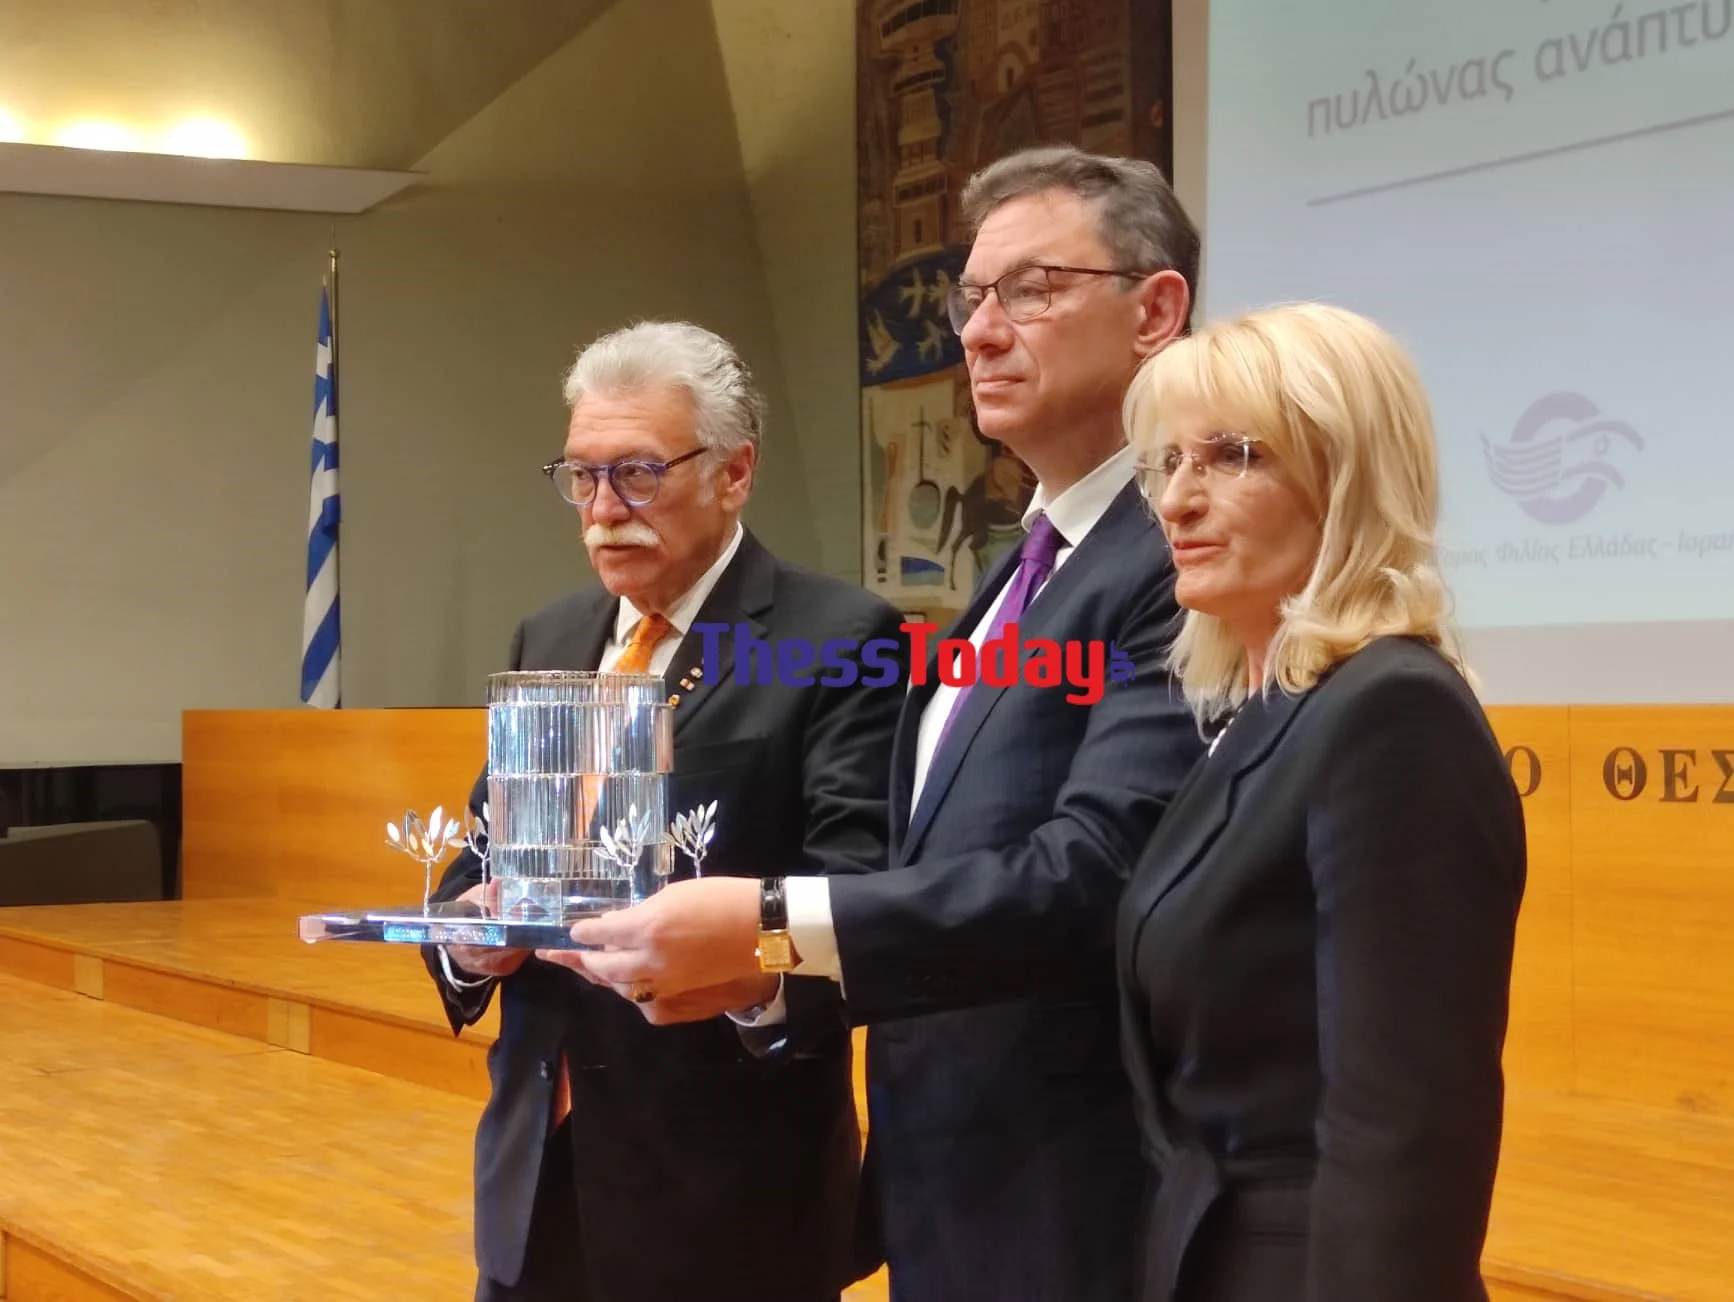 Θεσσαλονίκη: Ένταση στην τελετή βράβευσης του Άλμπερτ Μπουρλά